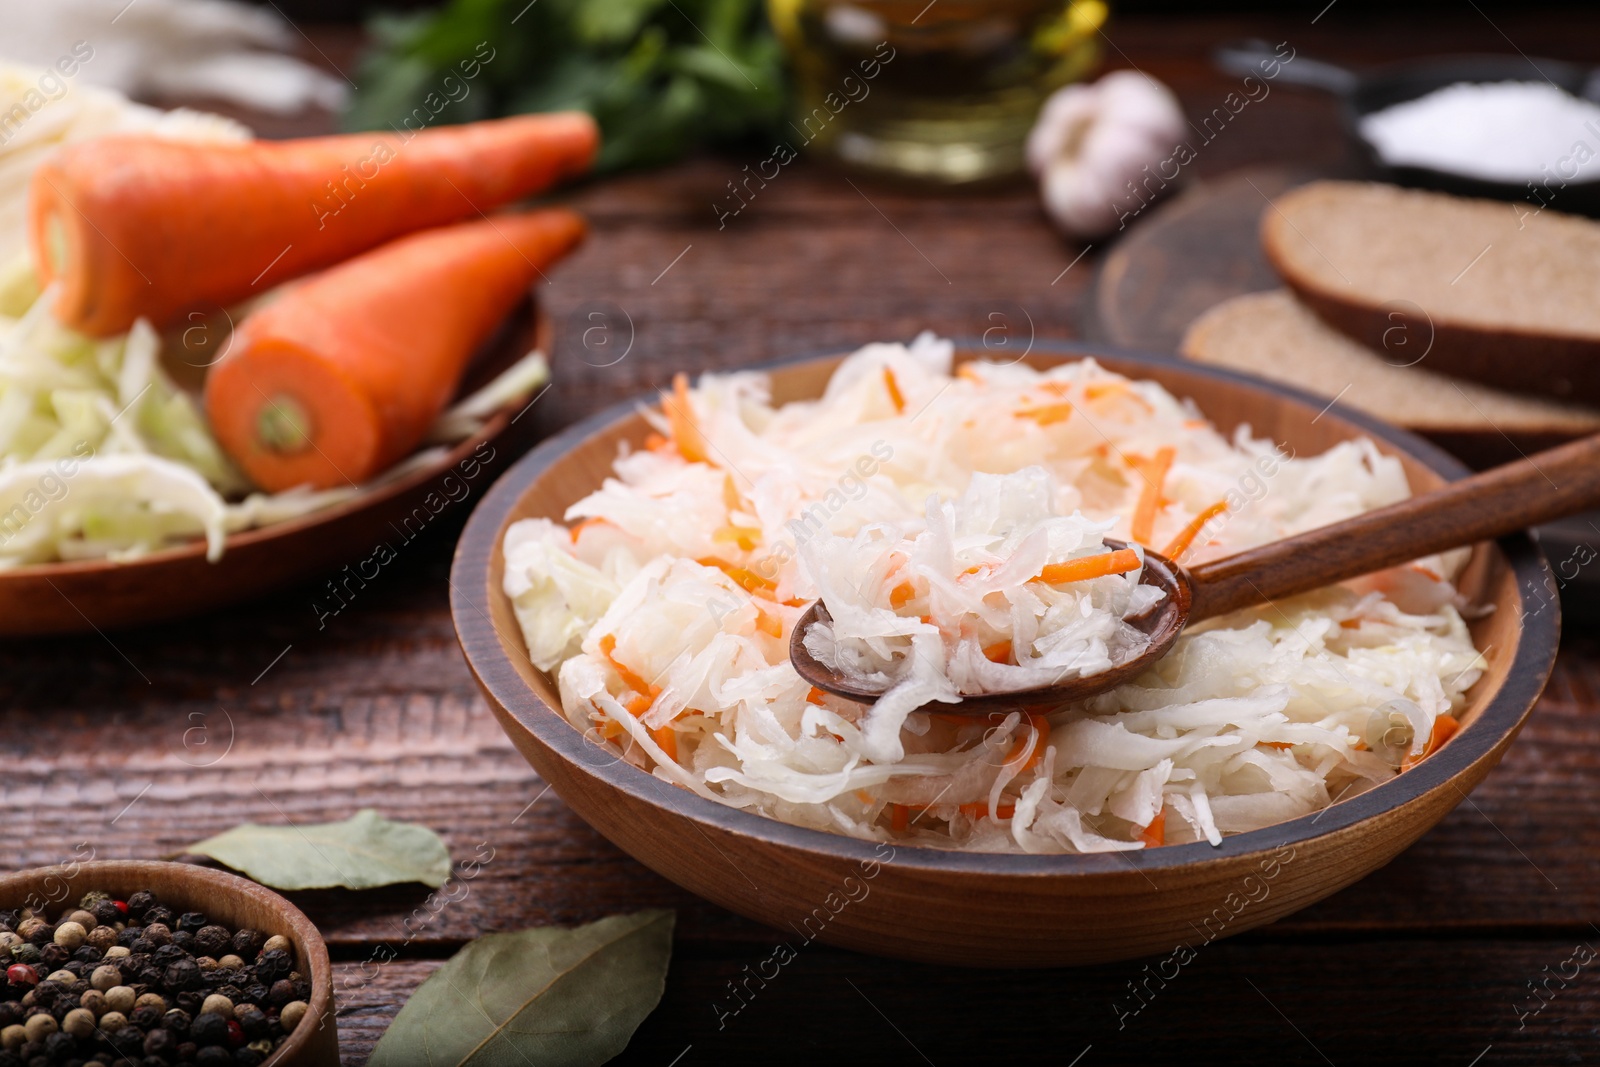 Photo of Bowl of tasty sauerkraut on wooden table, closeup